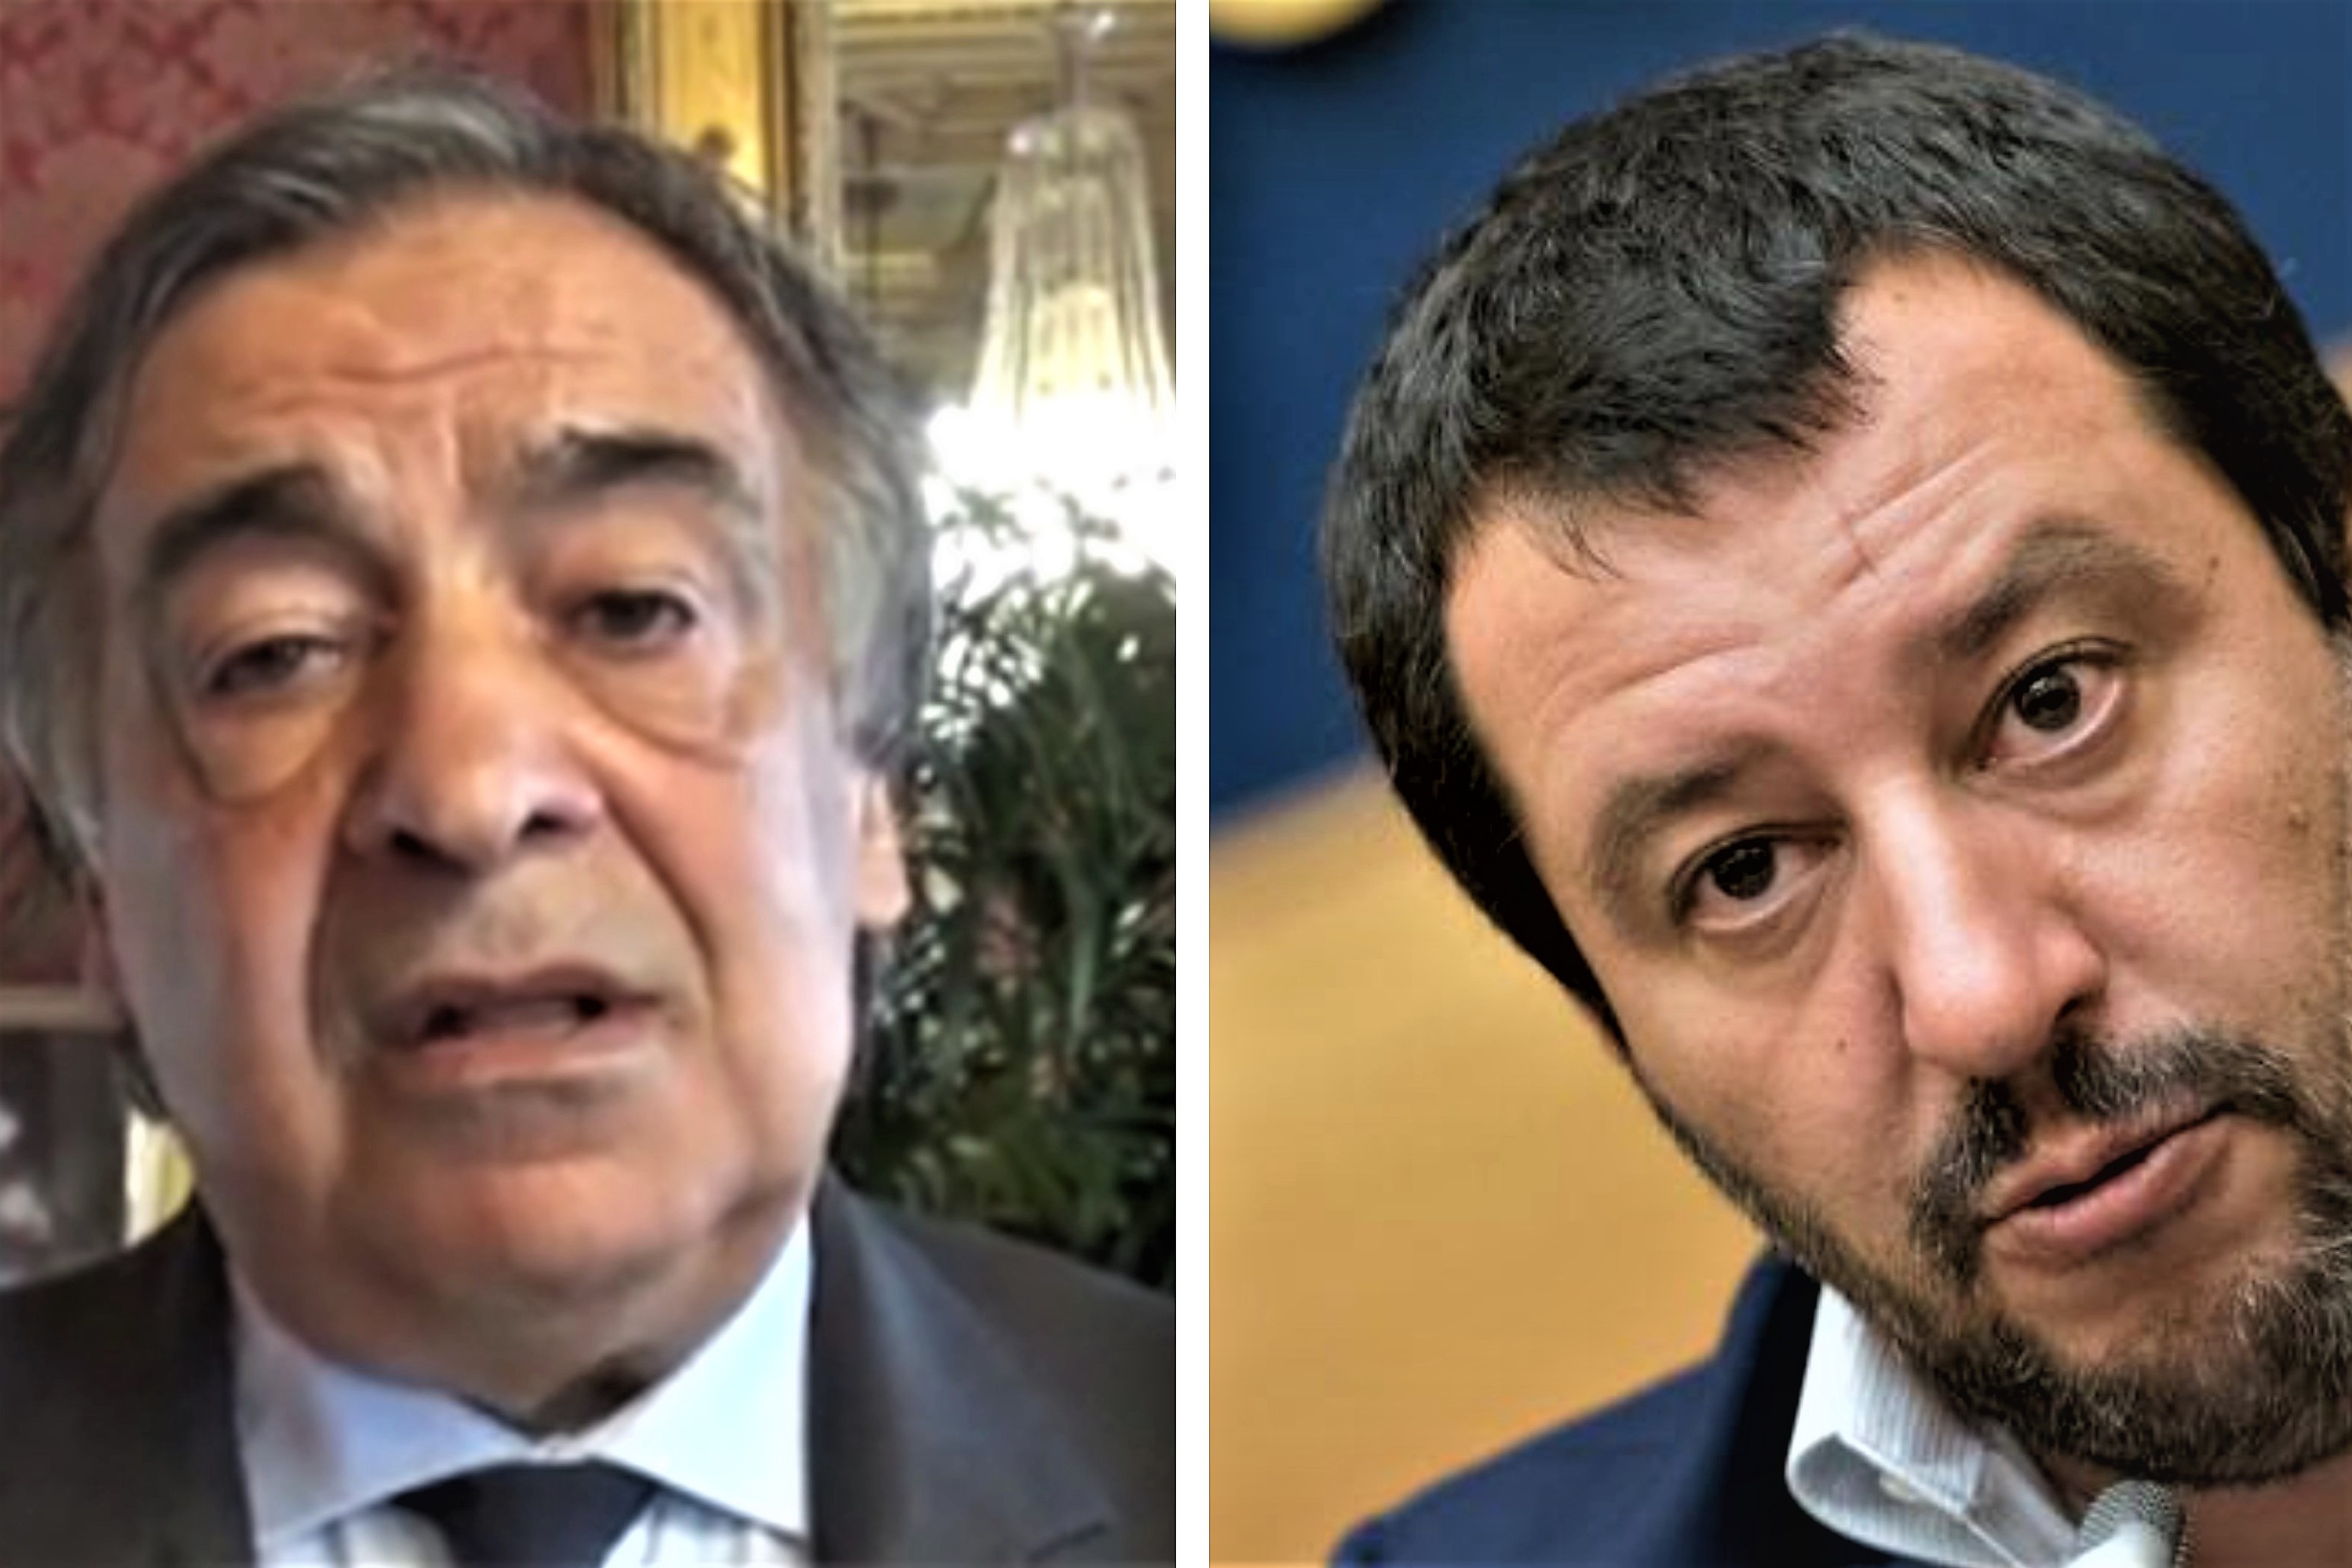 Salvini, Palermo non ha ancora la carta identità elettronica